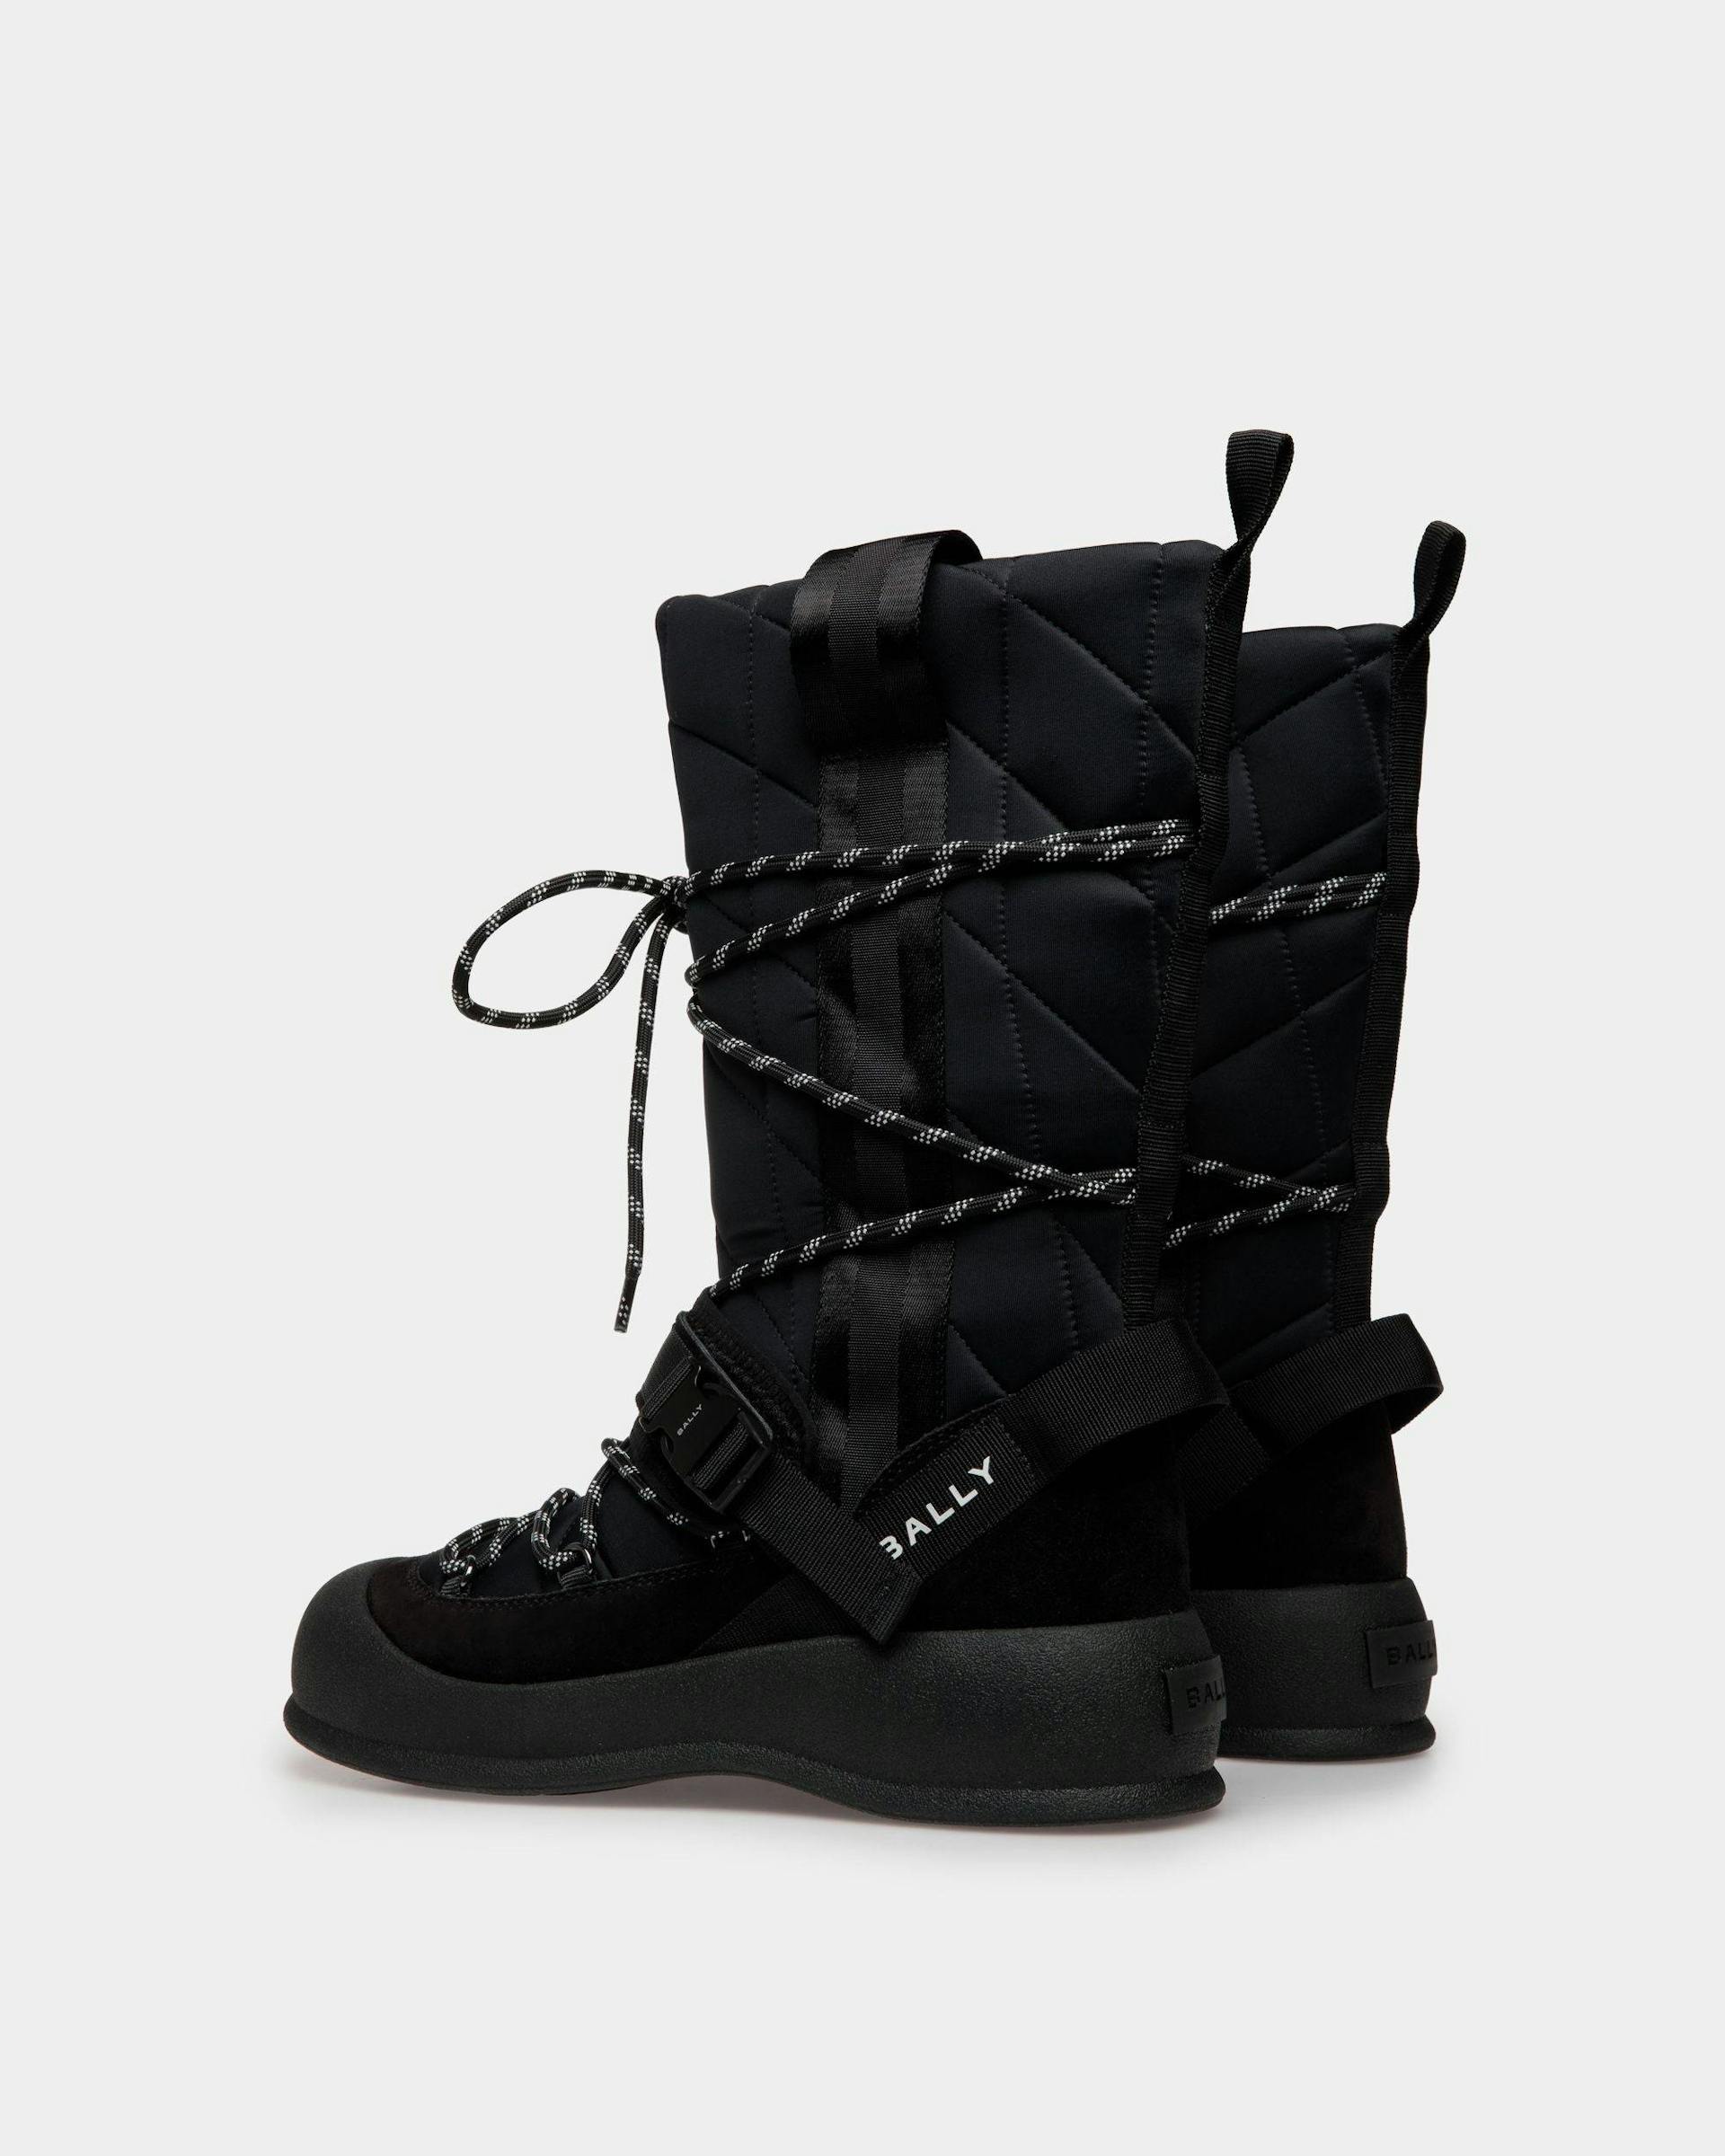 Women's Frei Boot In Black Nylon | Bally | Still Life 3/4 Back